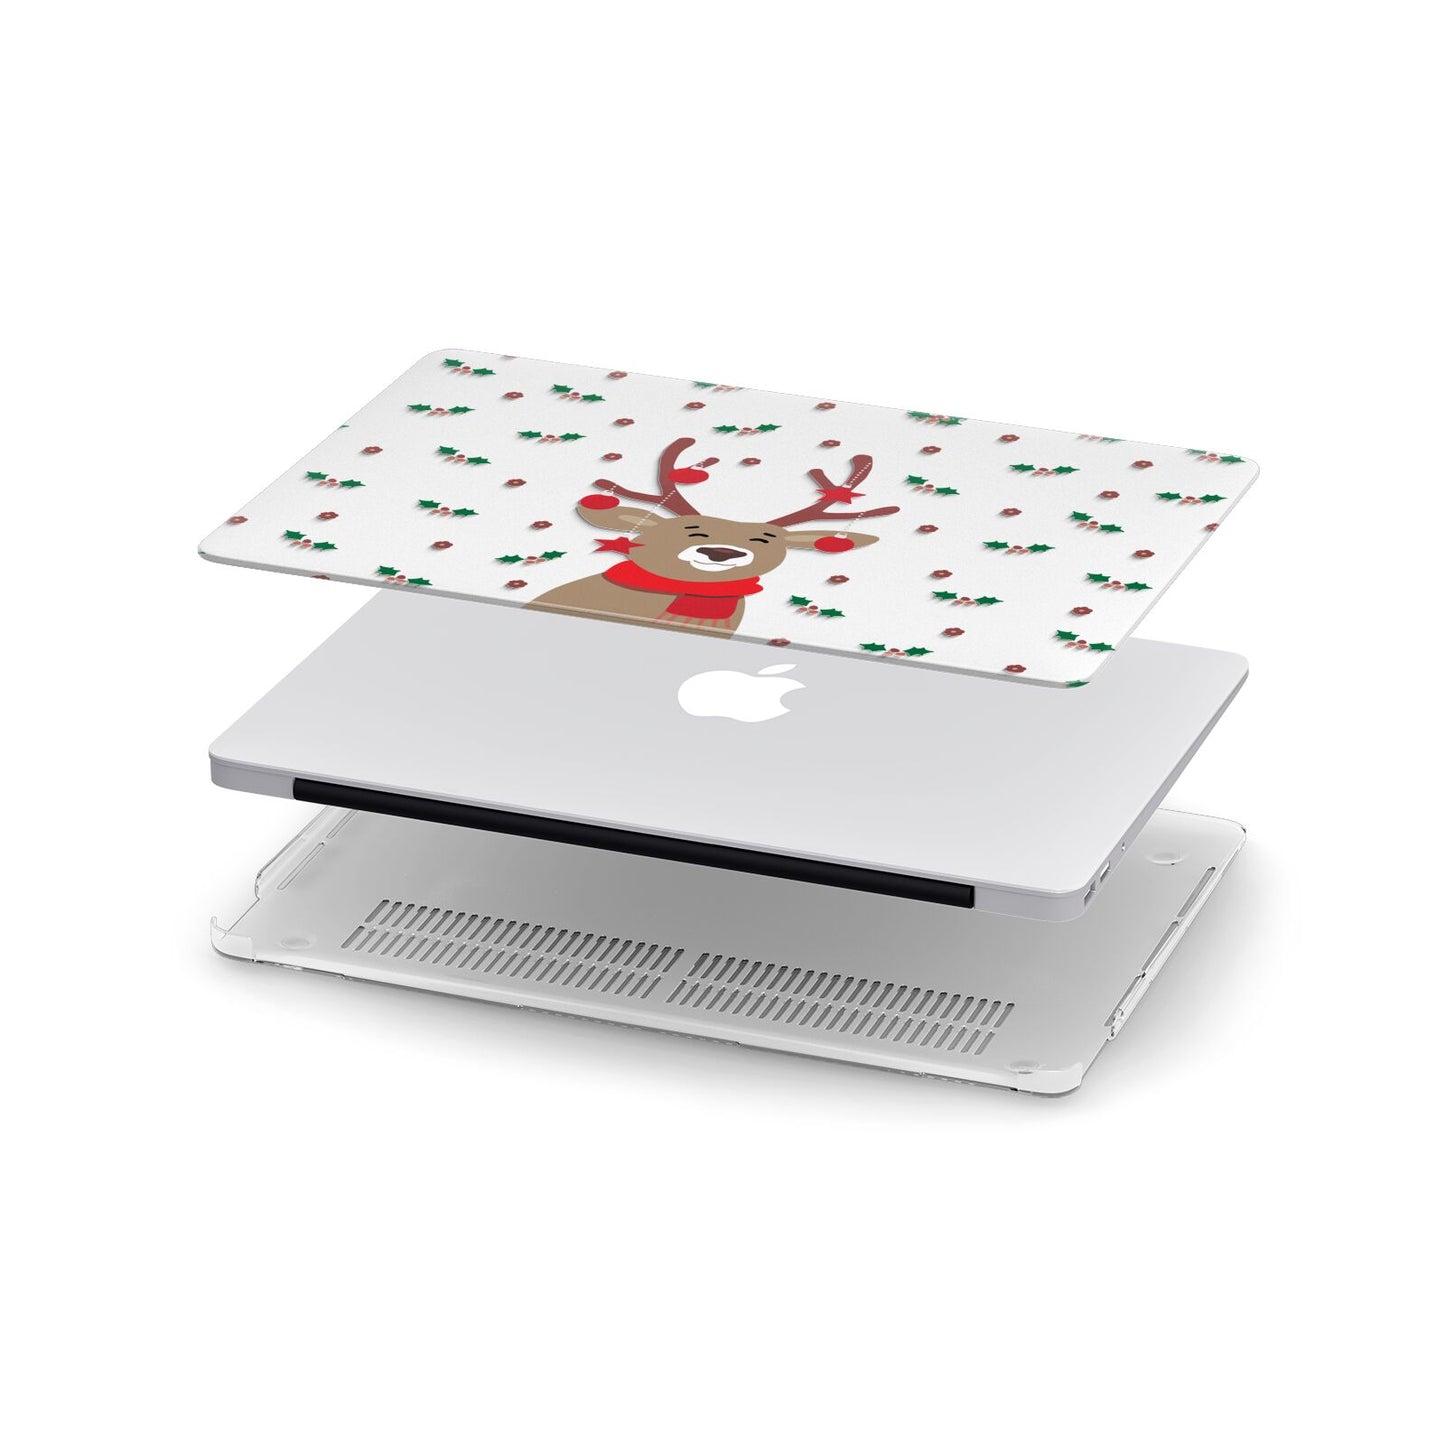 Reindeer Christmas Apple MacBook Case in Detail